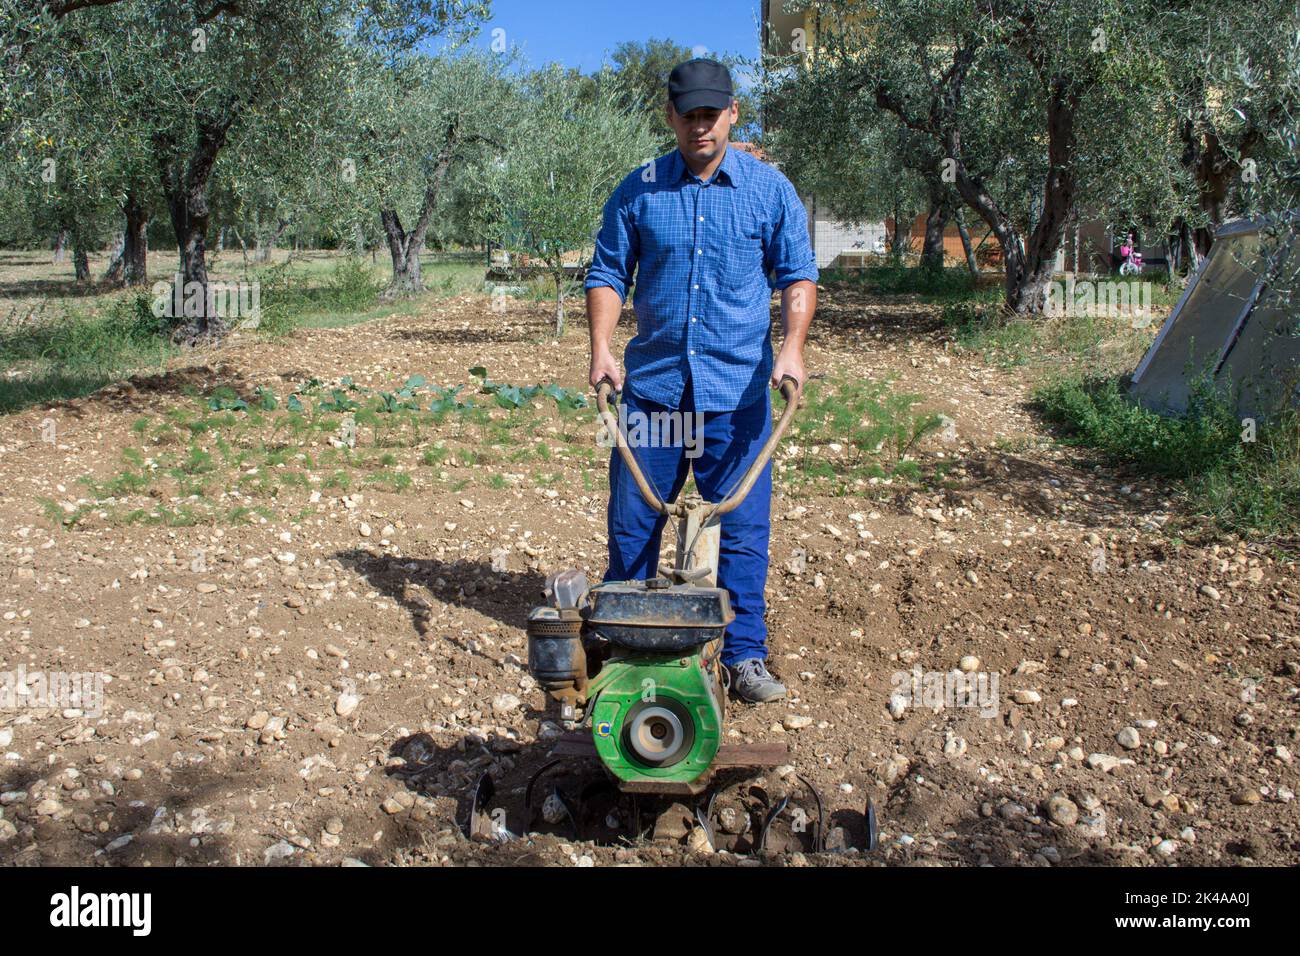 Immagine di un agricoltore che con un timone a mano prepara il terreno per coltivare il suo orto. Foto Stock